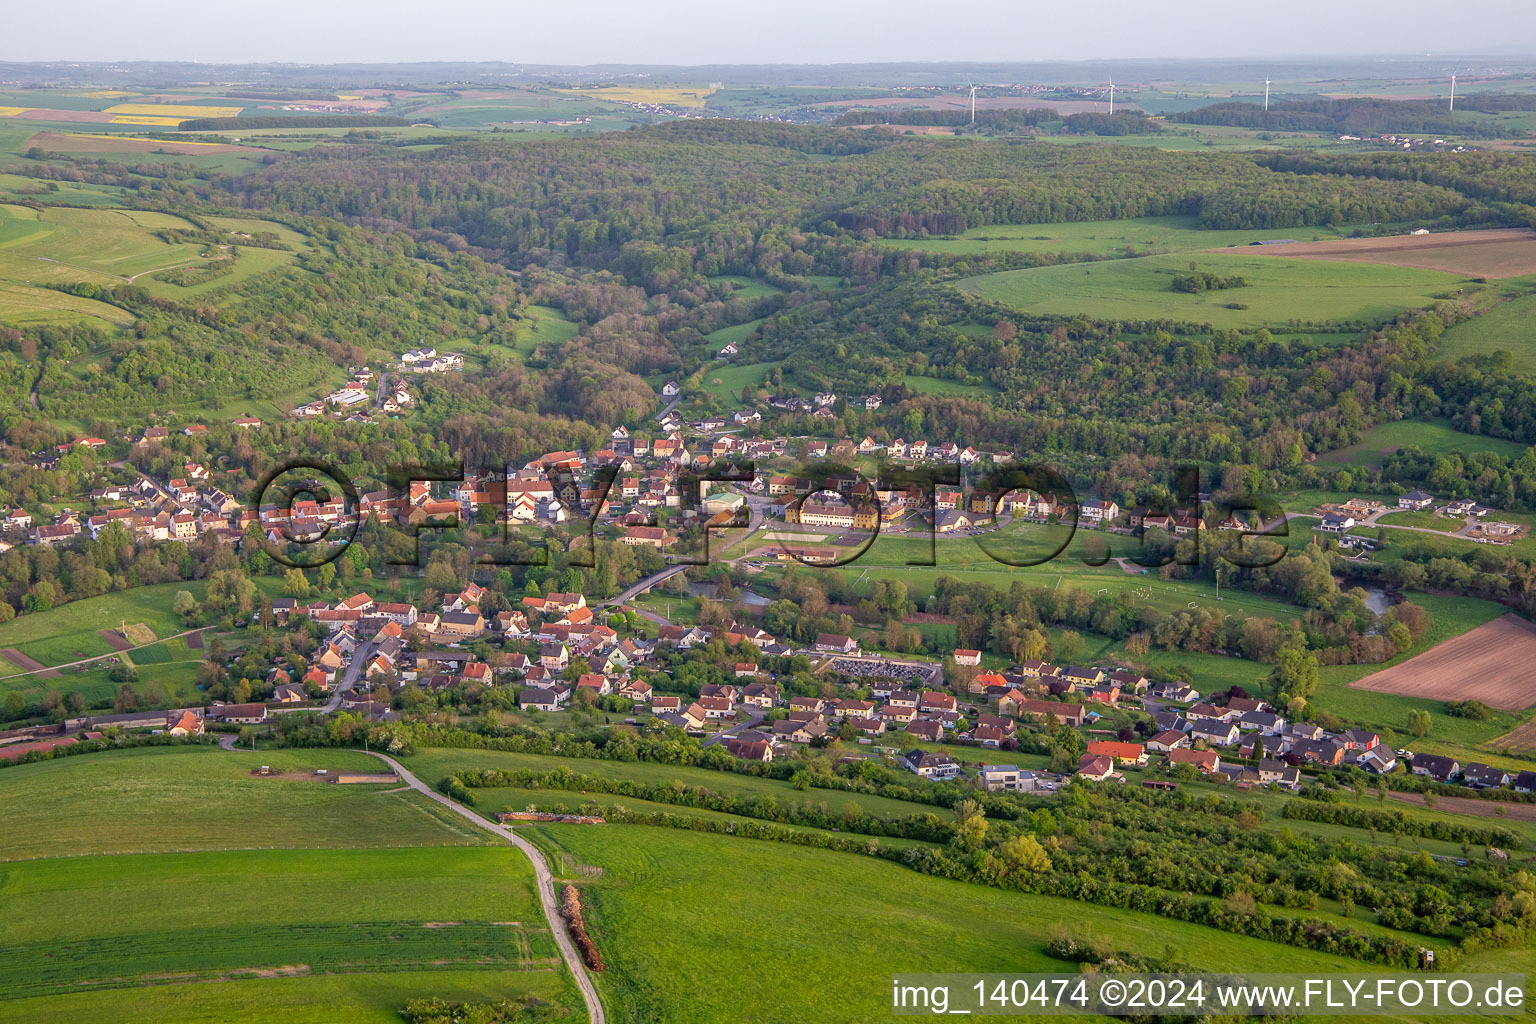 Vue aérienne de Du nord à Bliesbruck dans le département Moselle, France